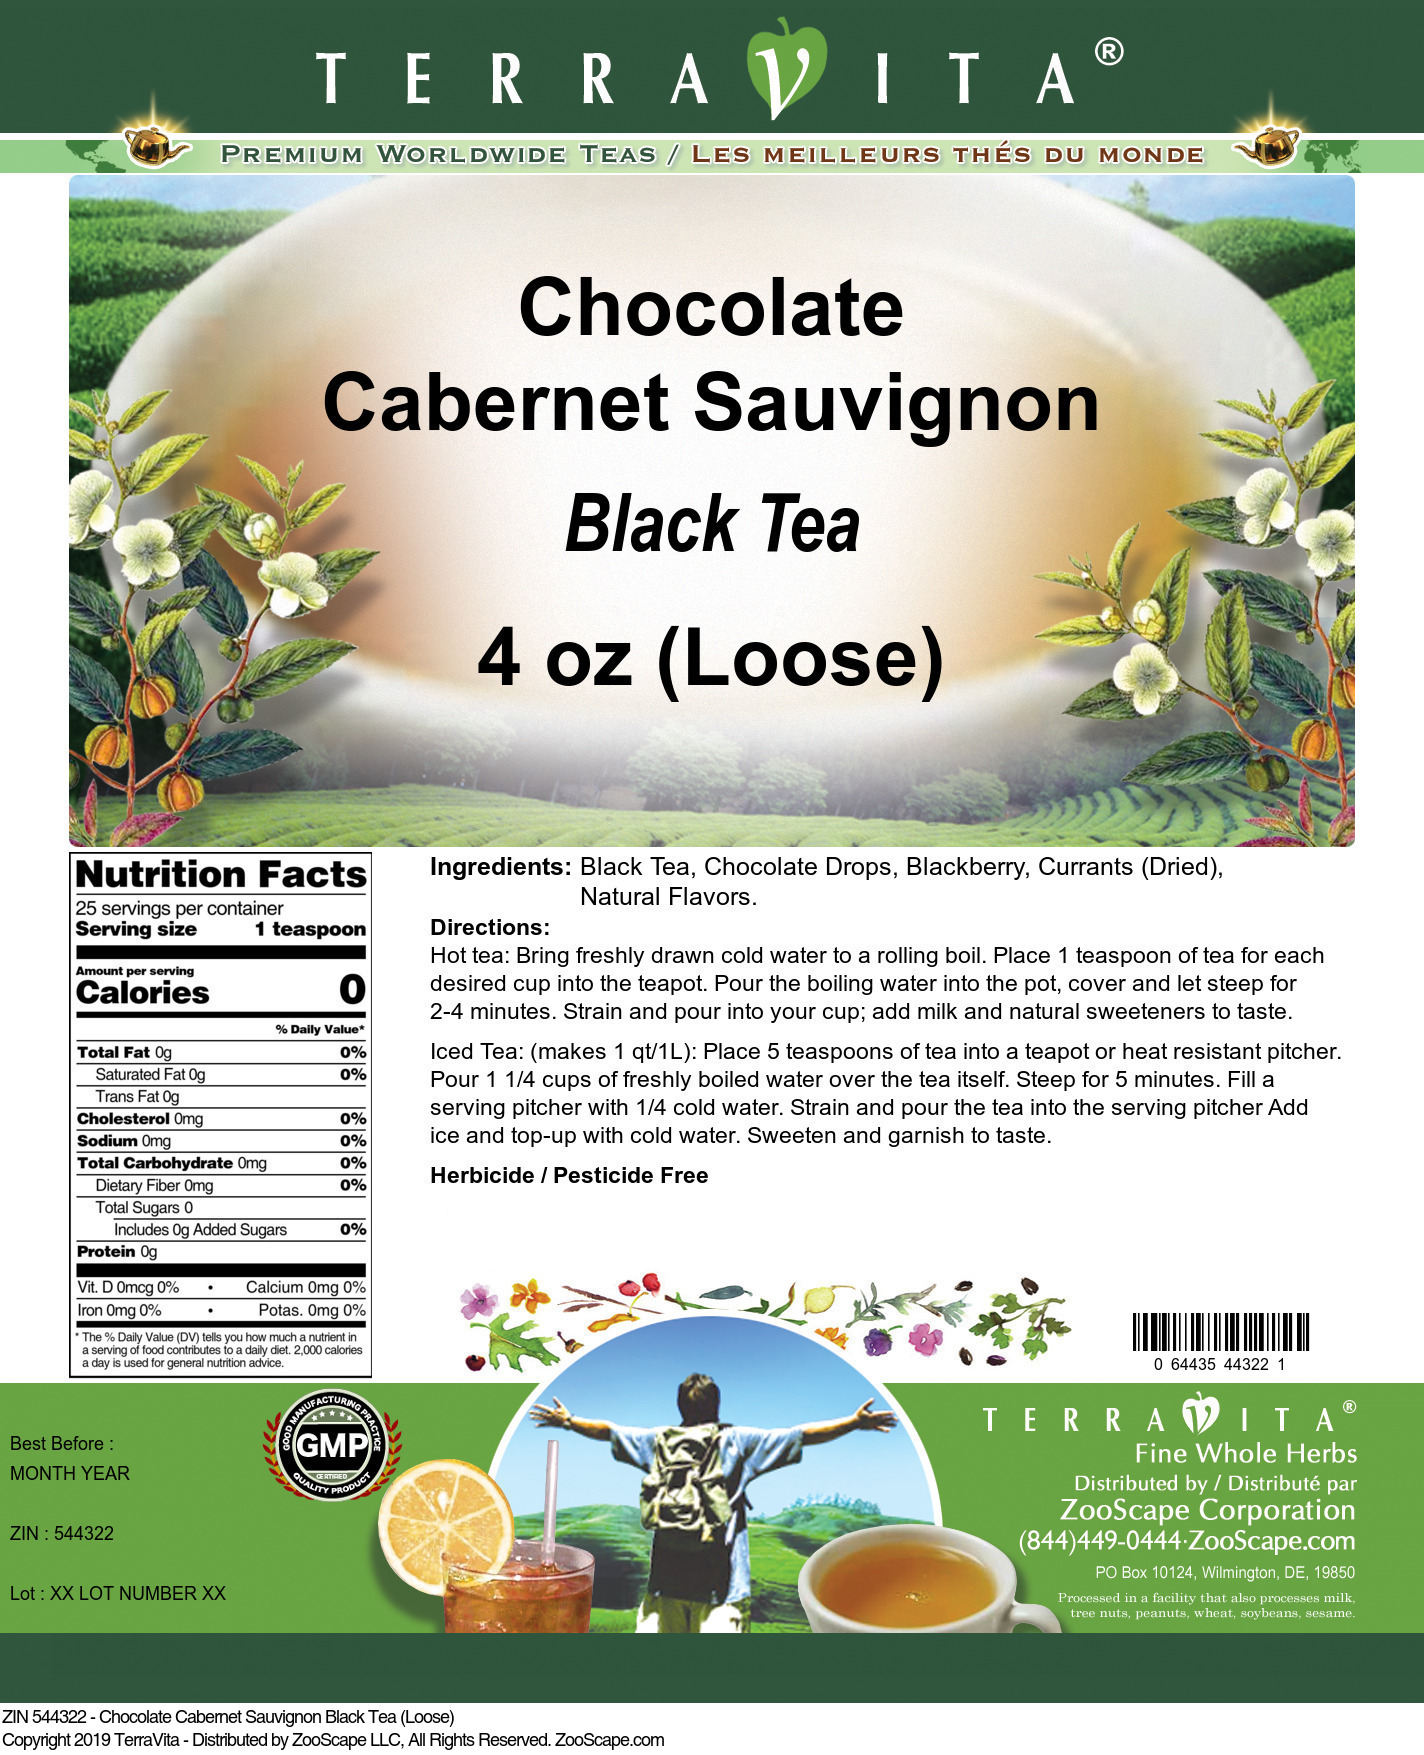 Chocolate Cabernet Sauvignon Black Tea (Loose) - Label